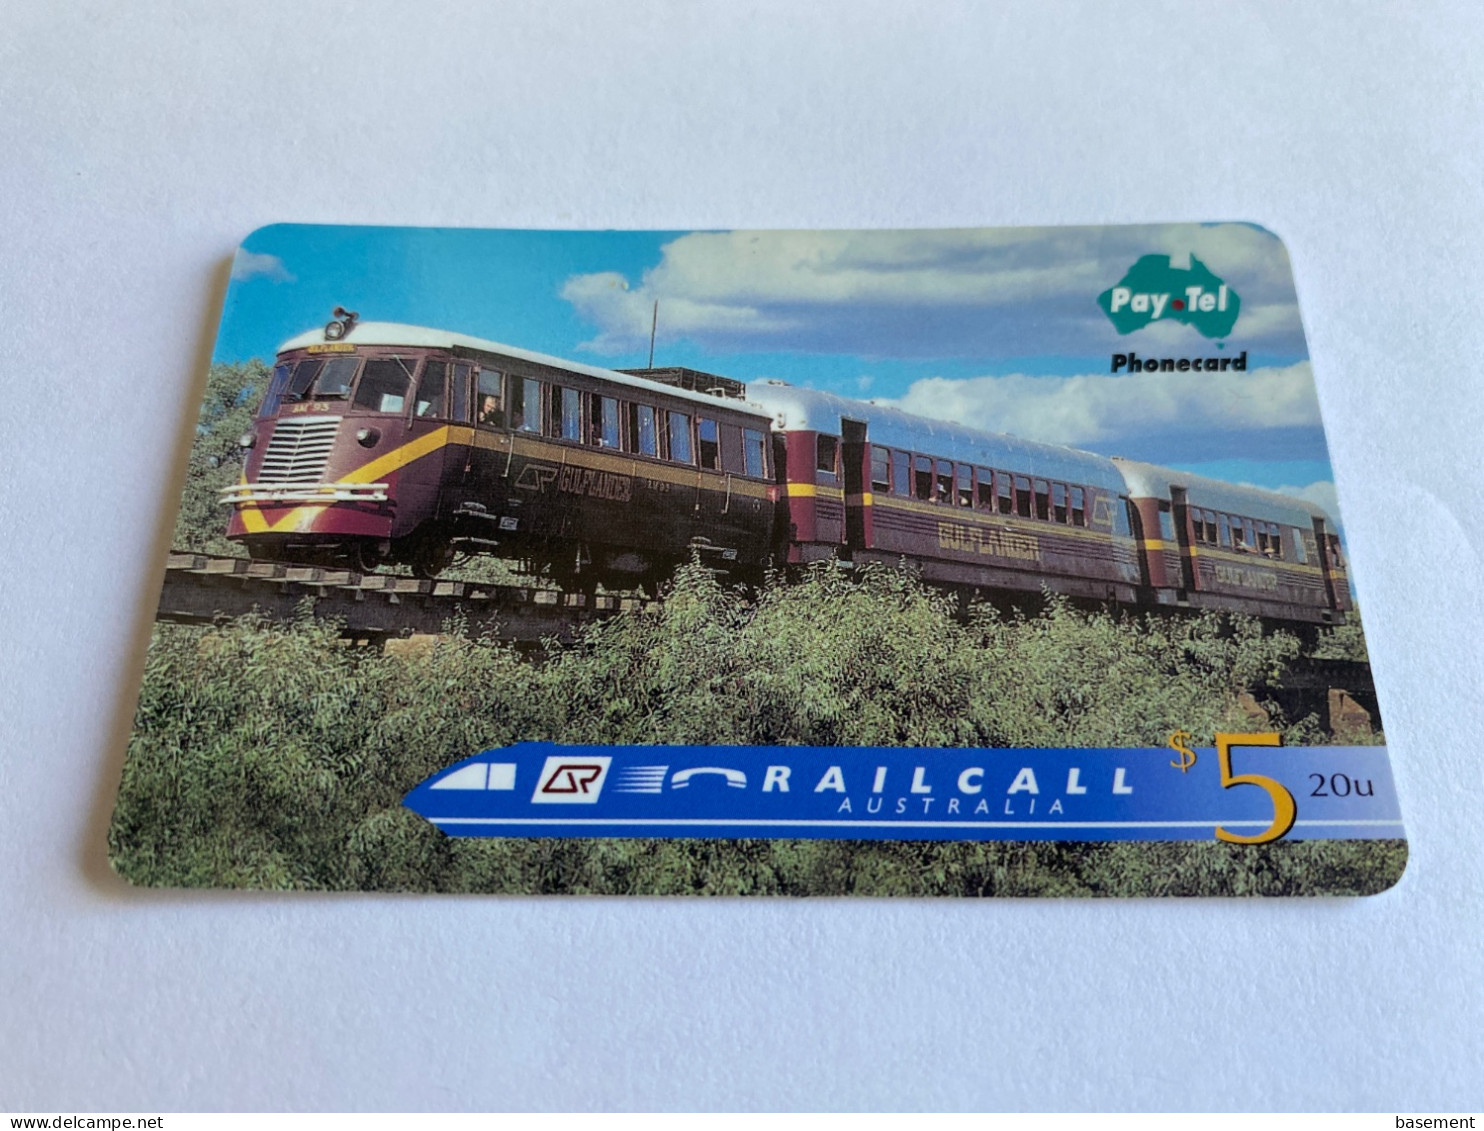 1:030 - Australia Pay Tel RailCall Train - Australie